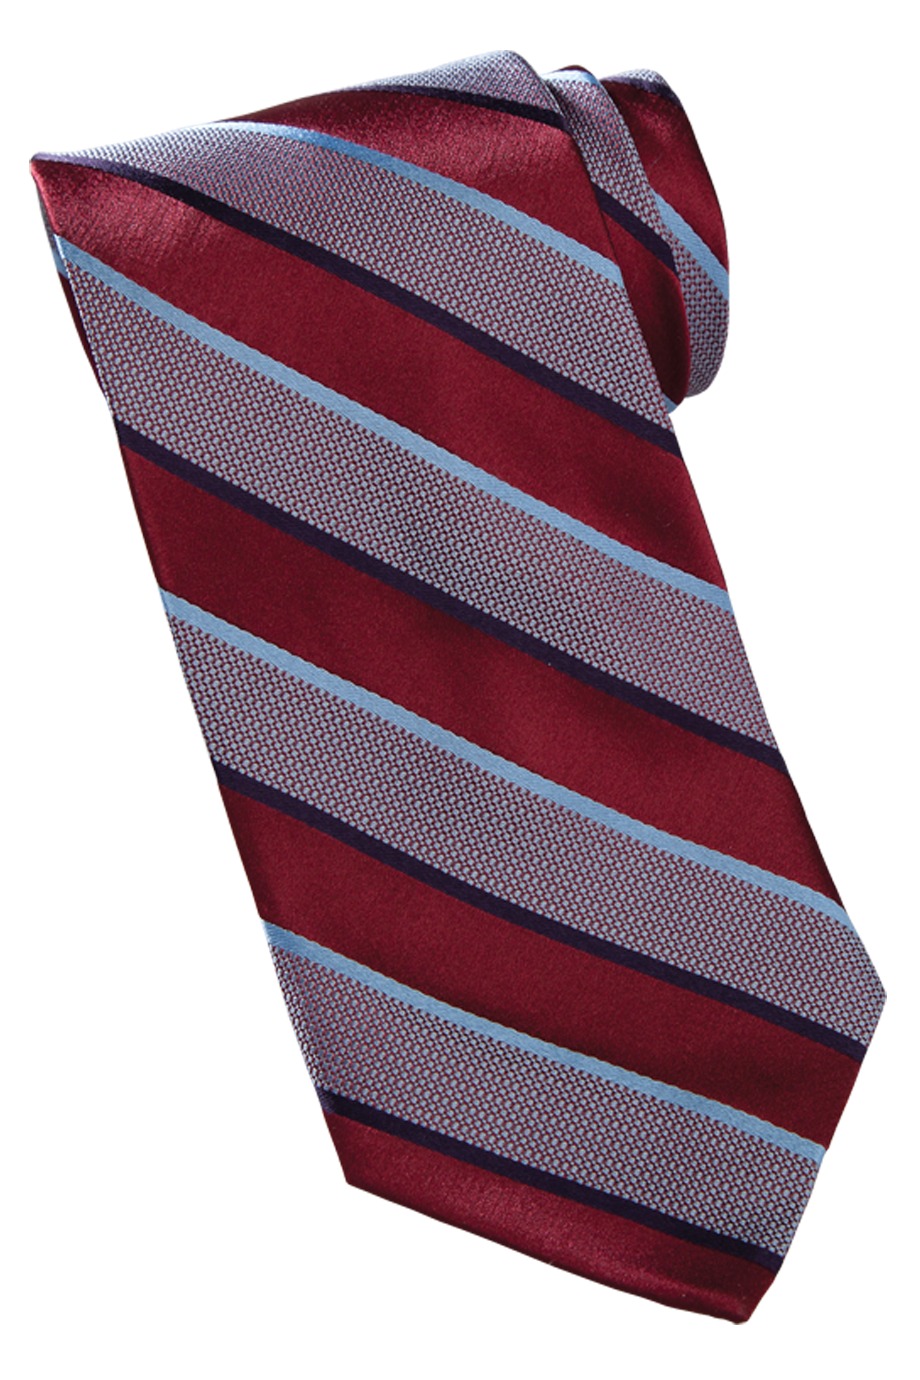 Edwards Garment SW00 - Wide Stripe Tie